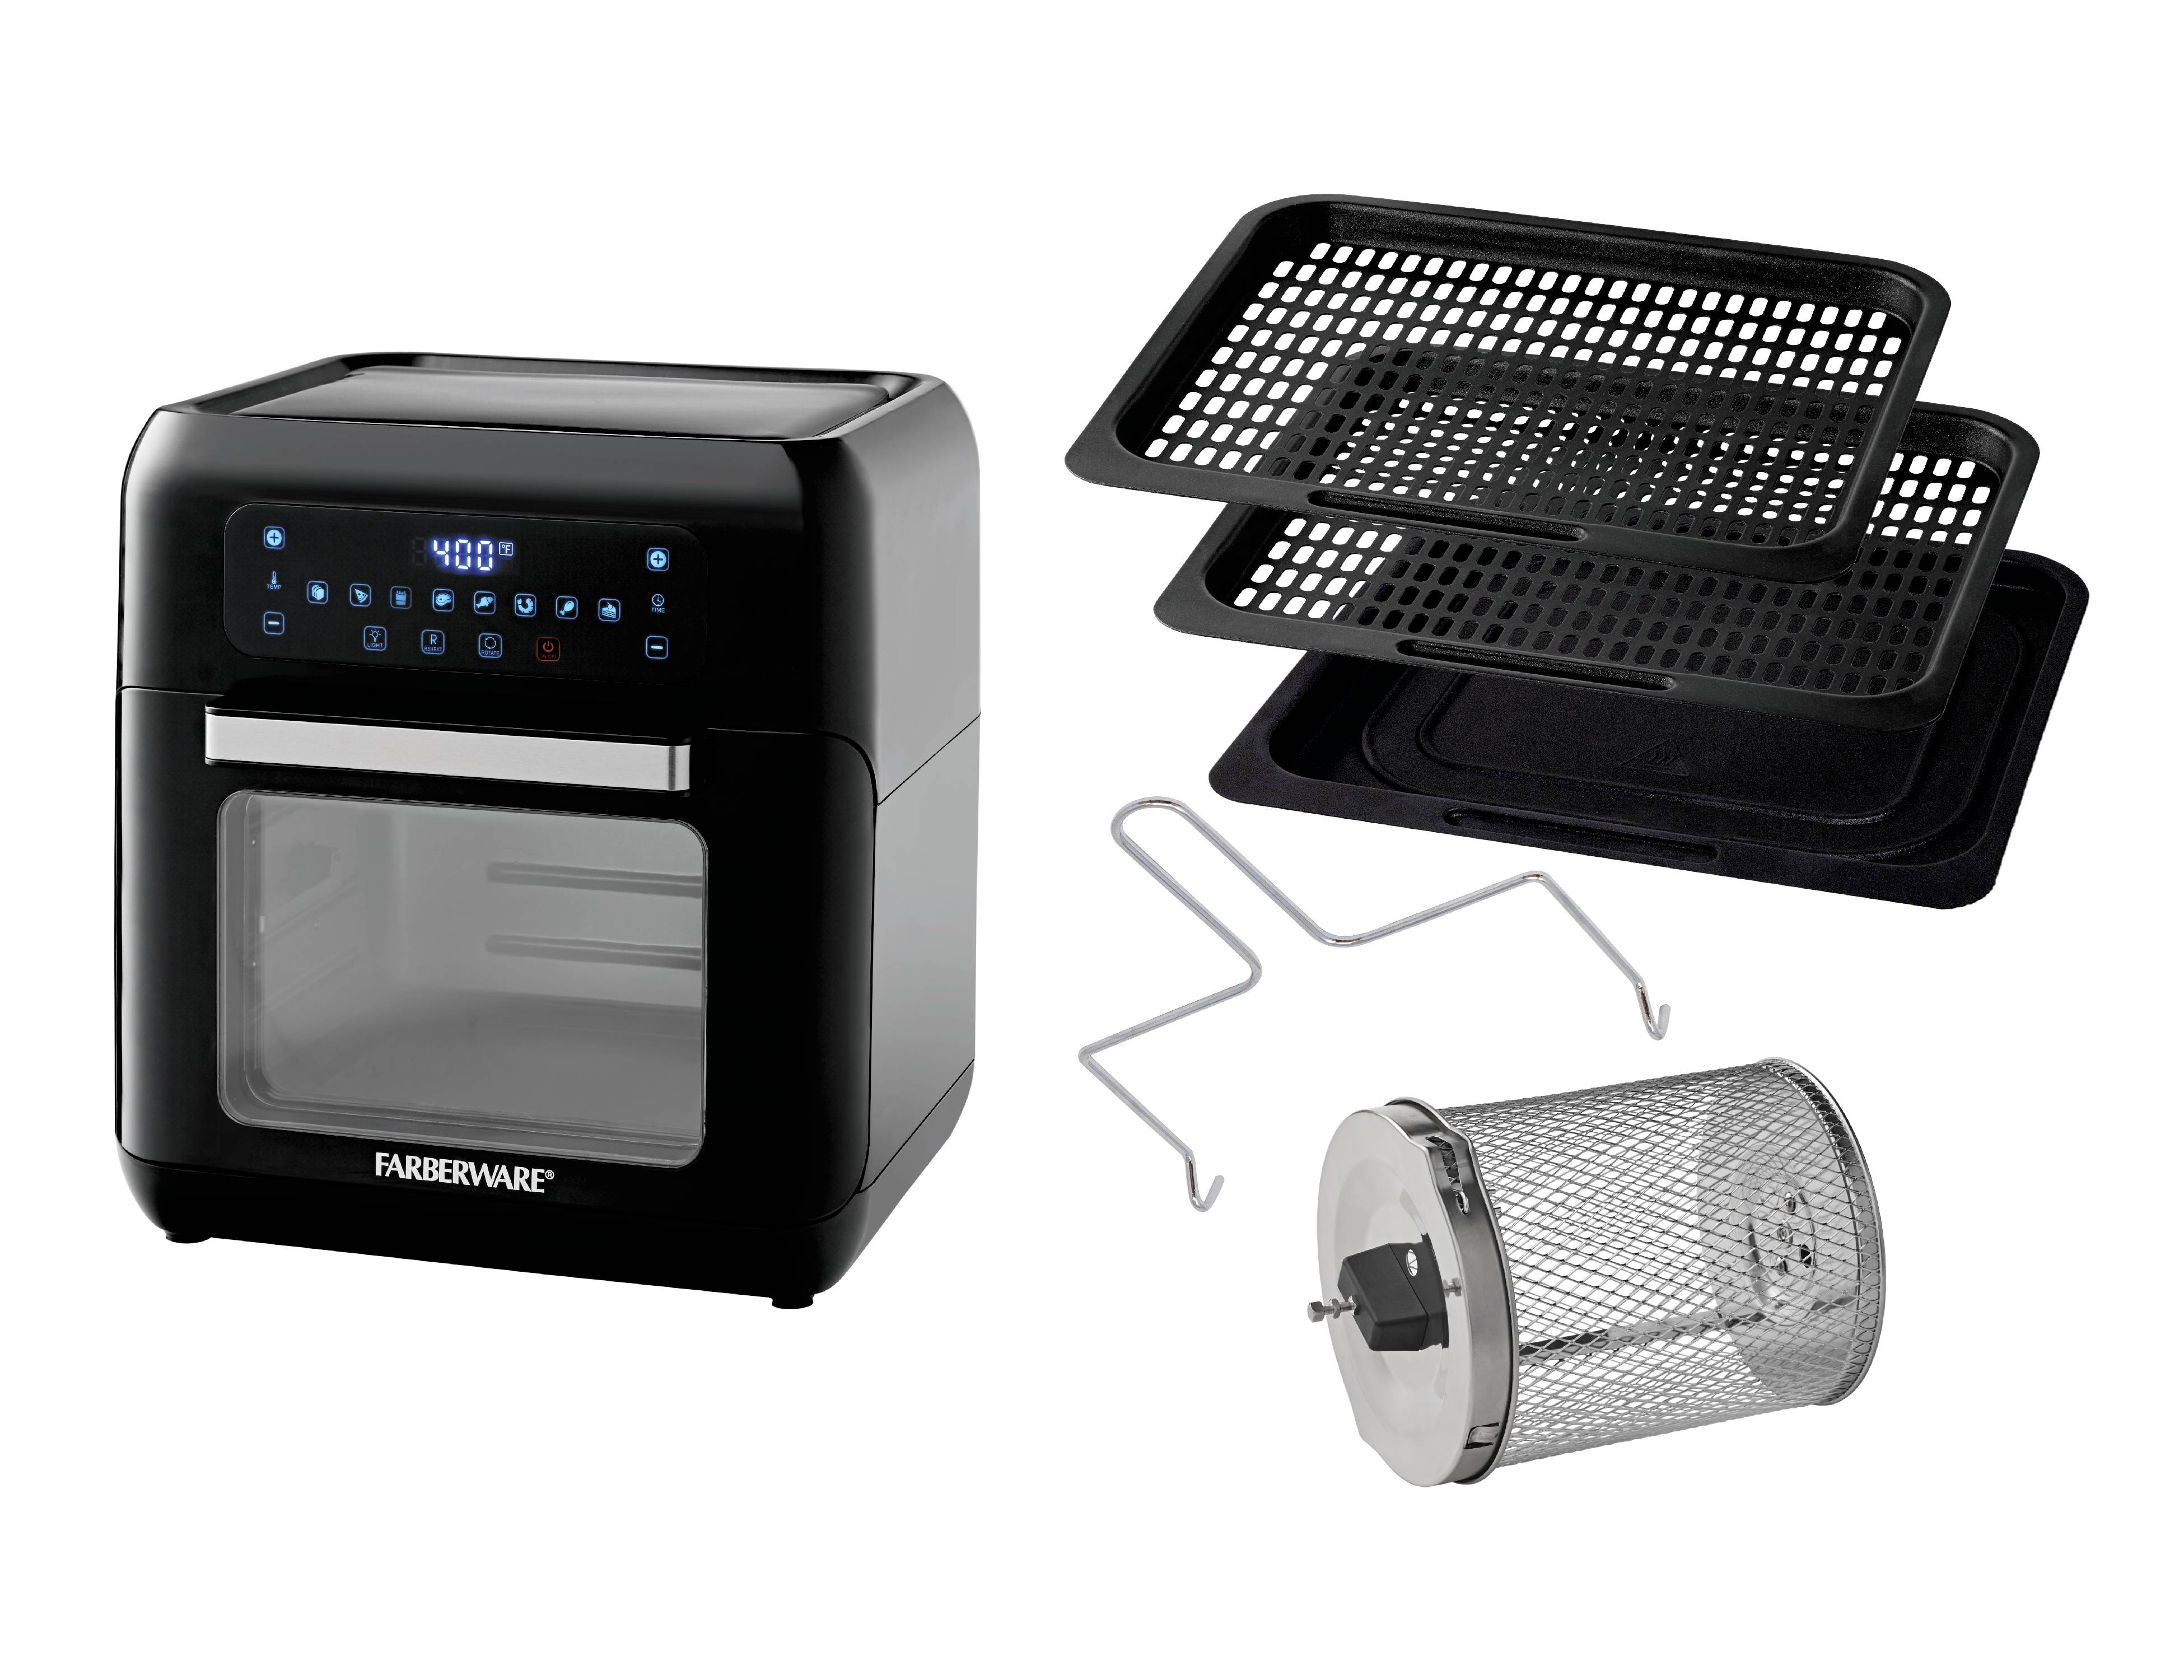 Farberware 6-Quart Digital XL Air Fryer Oven, Black - image 3 of 5